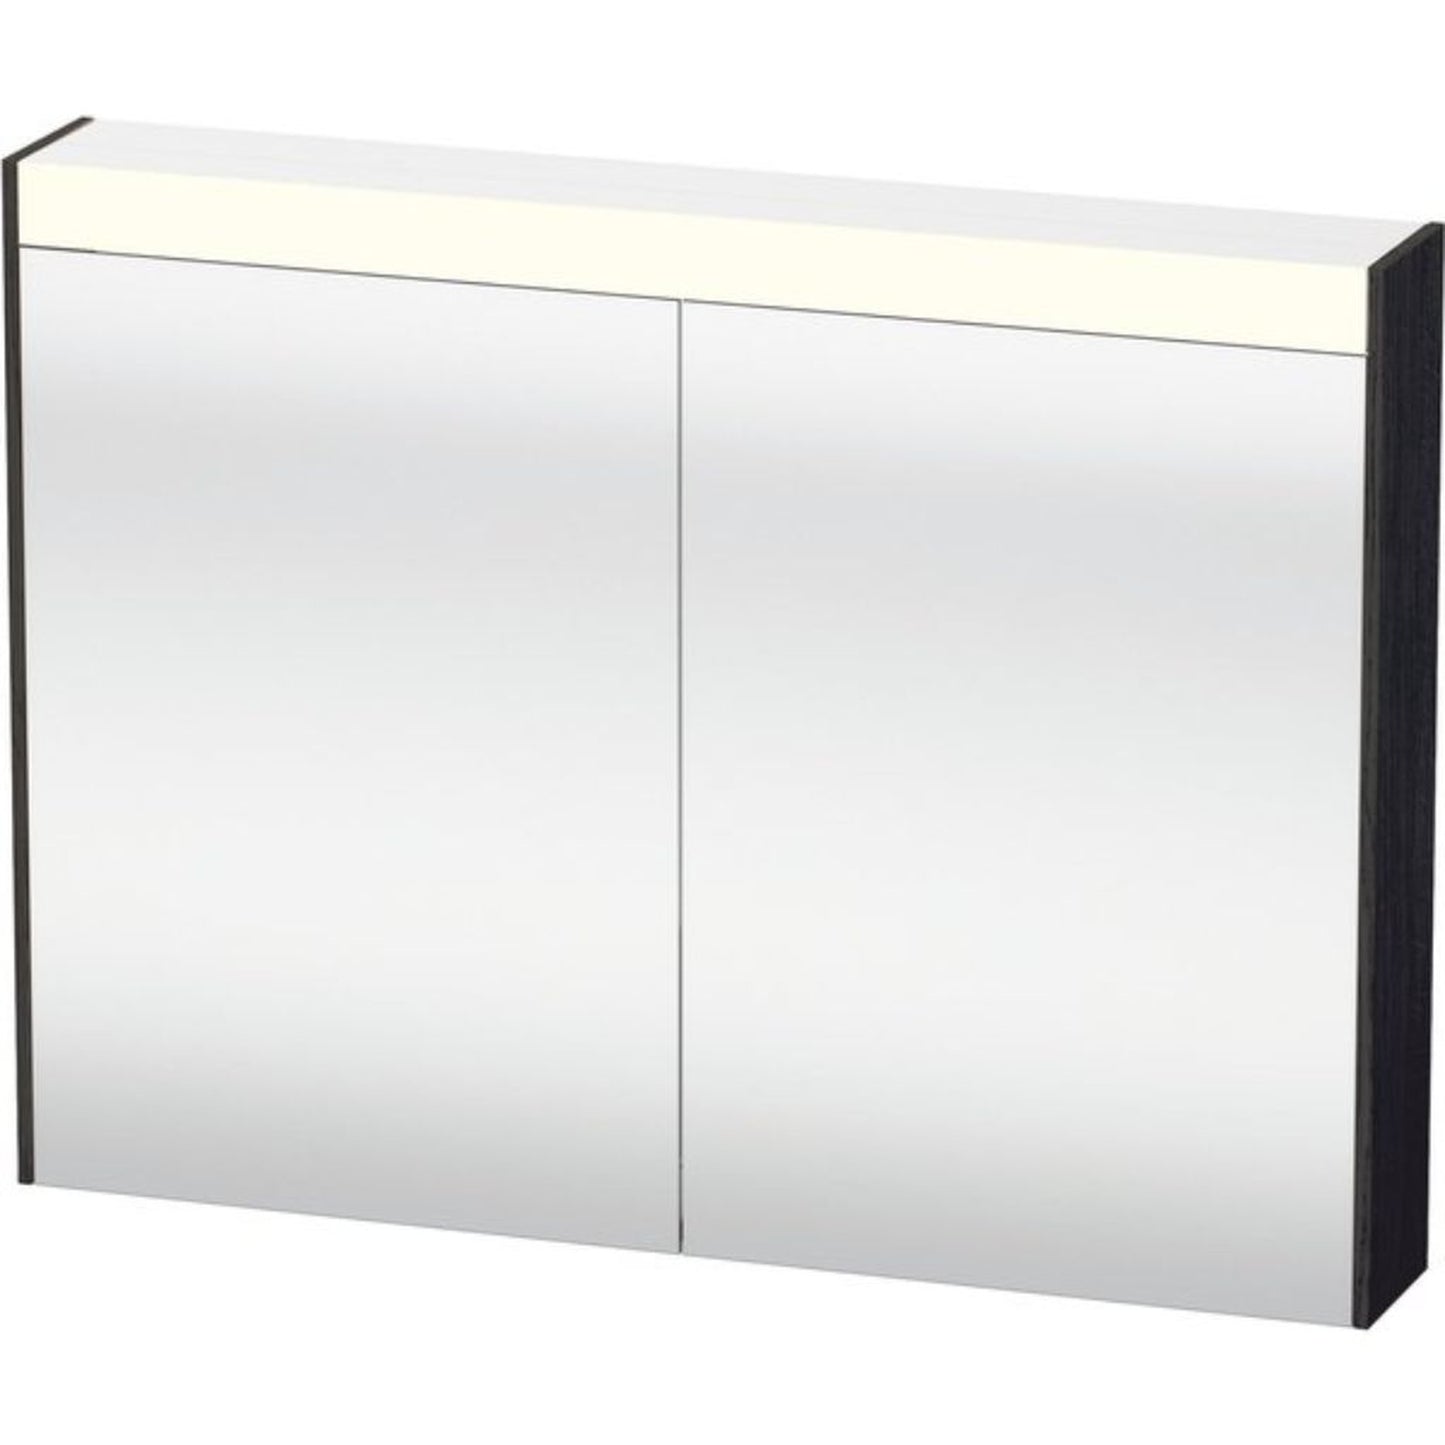 Duravit Brioso 32" x 30" x 6" Mirror Cabinet With Lighting Black Oak